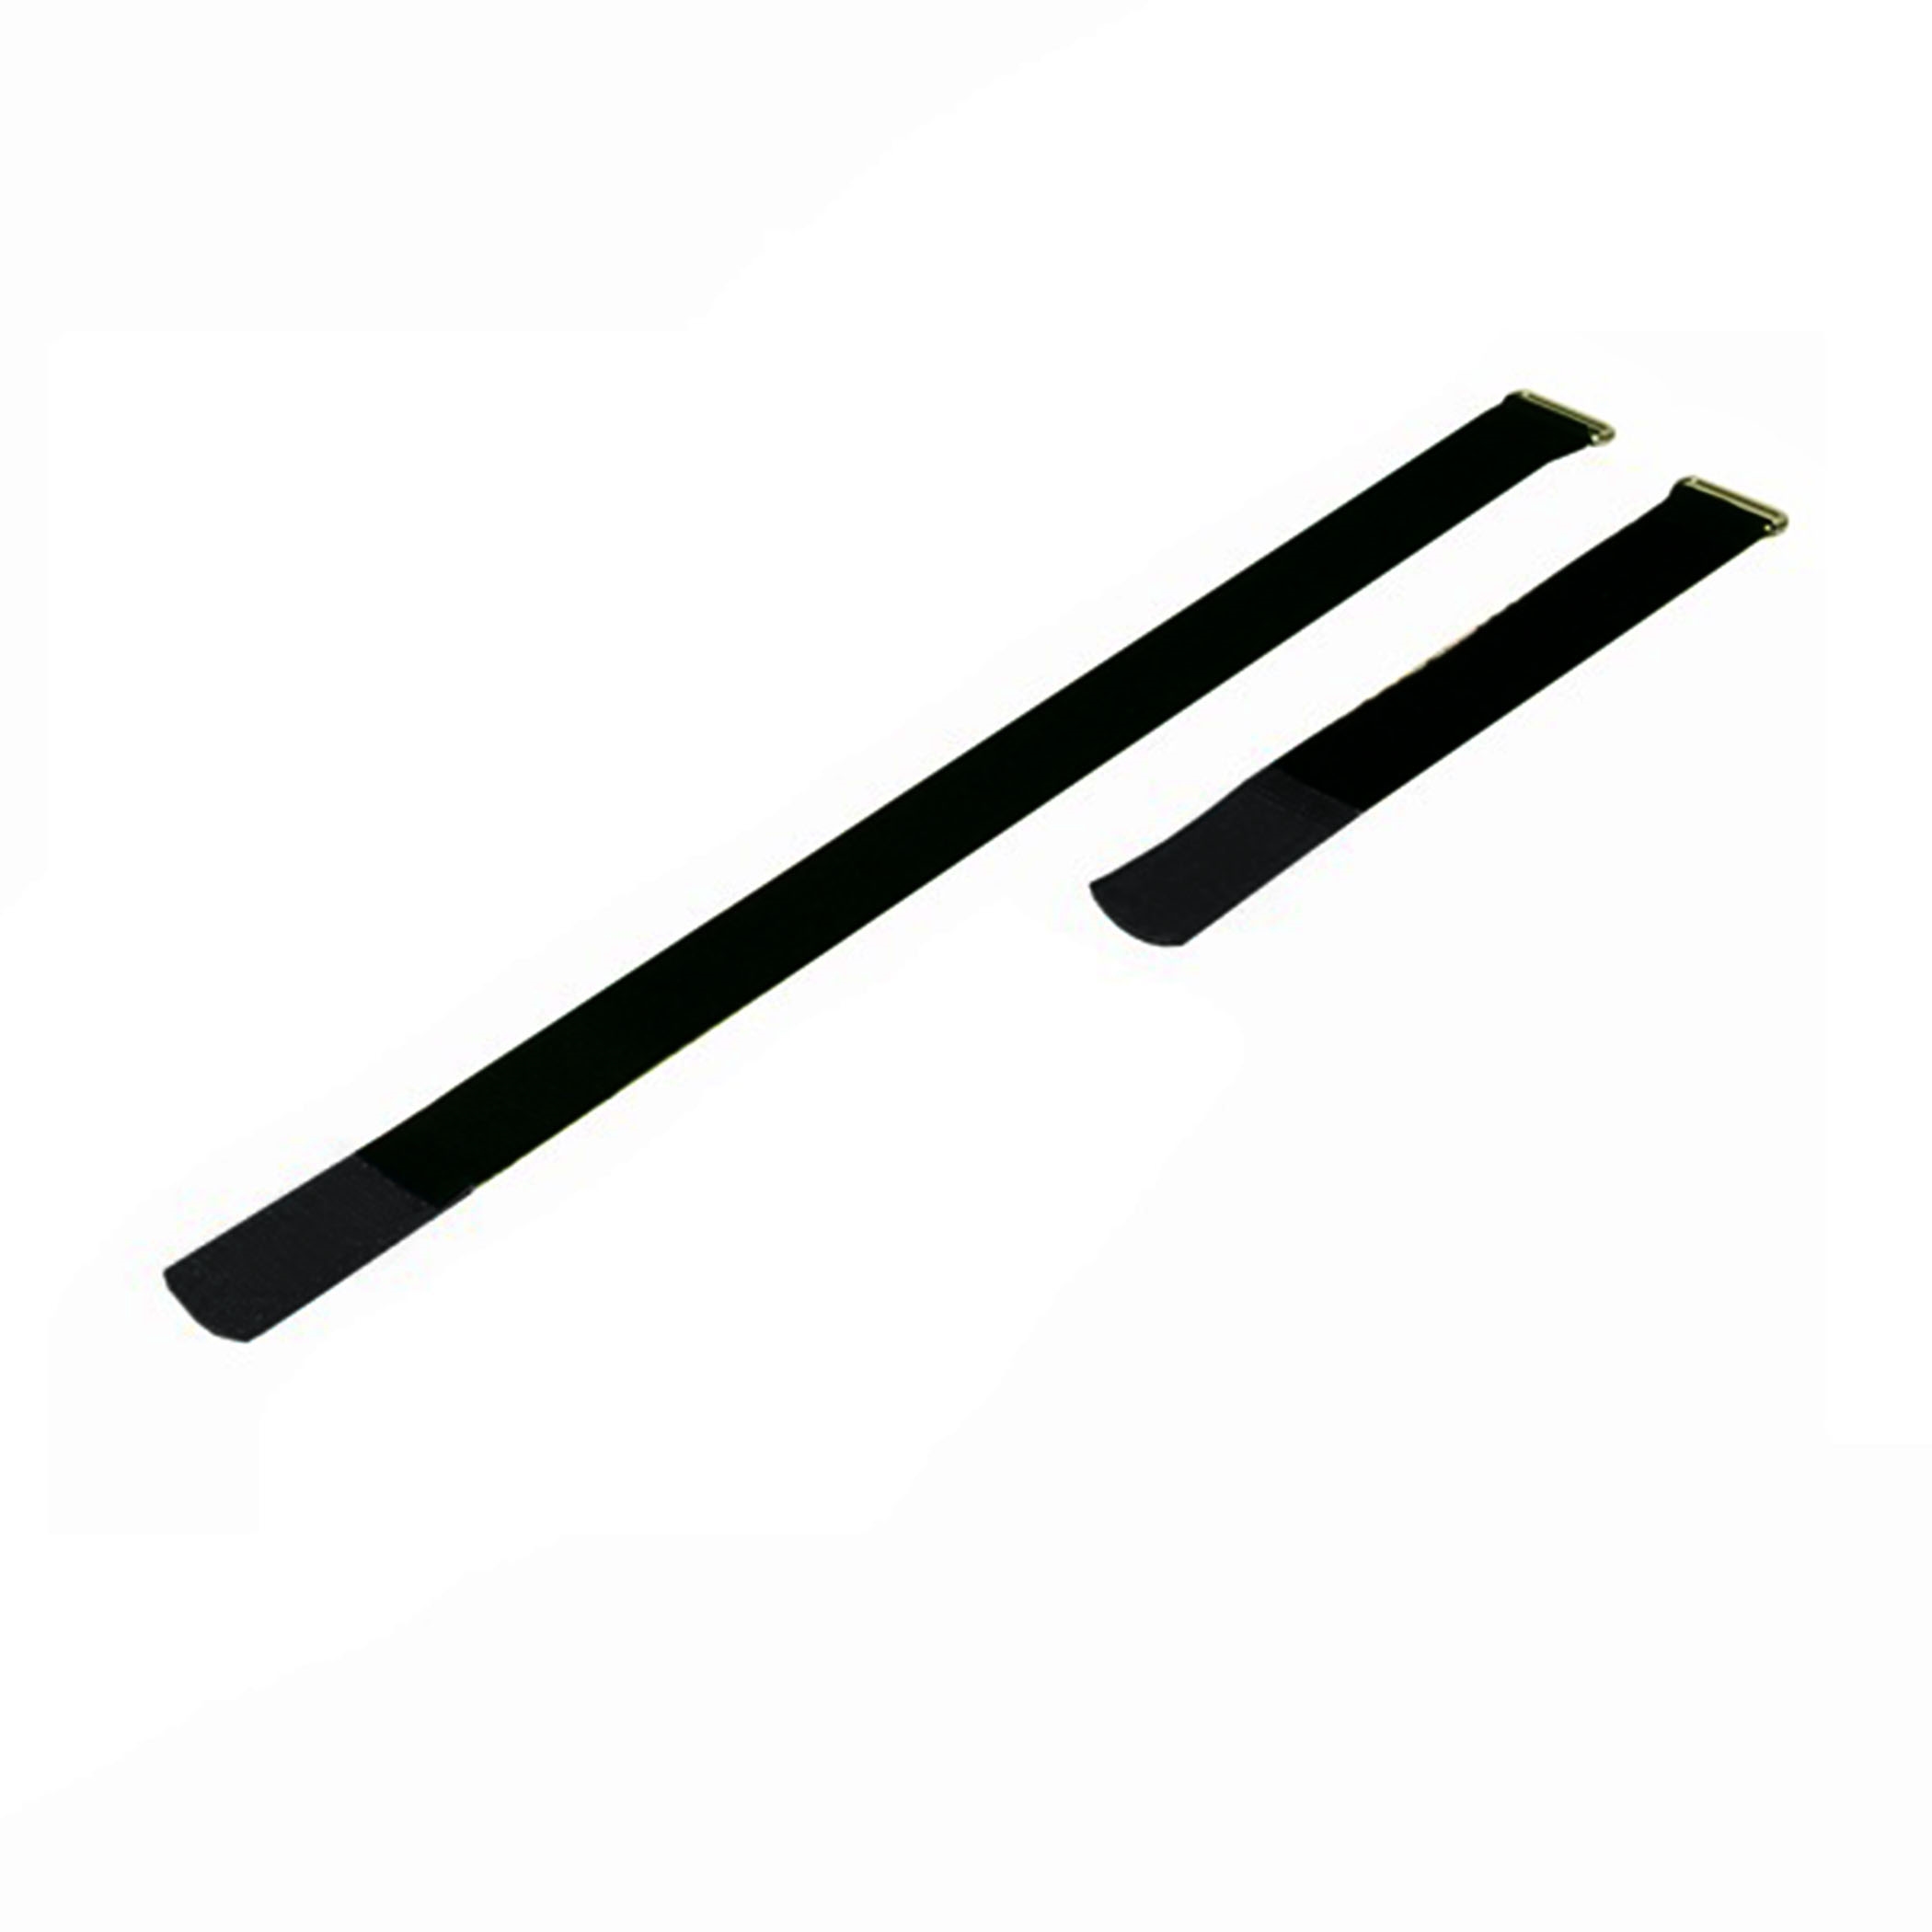 Kabelbinder 300x25mm met haaktip zwart, (10 stuks) - a2530-500h